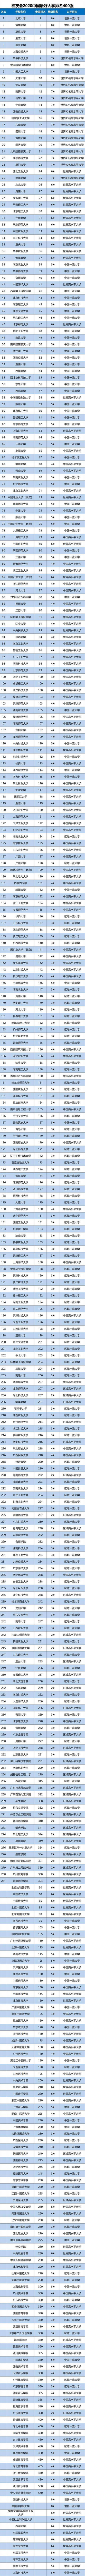 2020年大学新排名_2020年中国大学星级排名:234所高校获得4星级以上